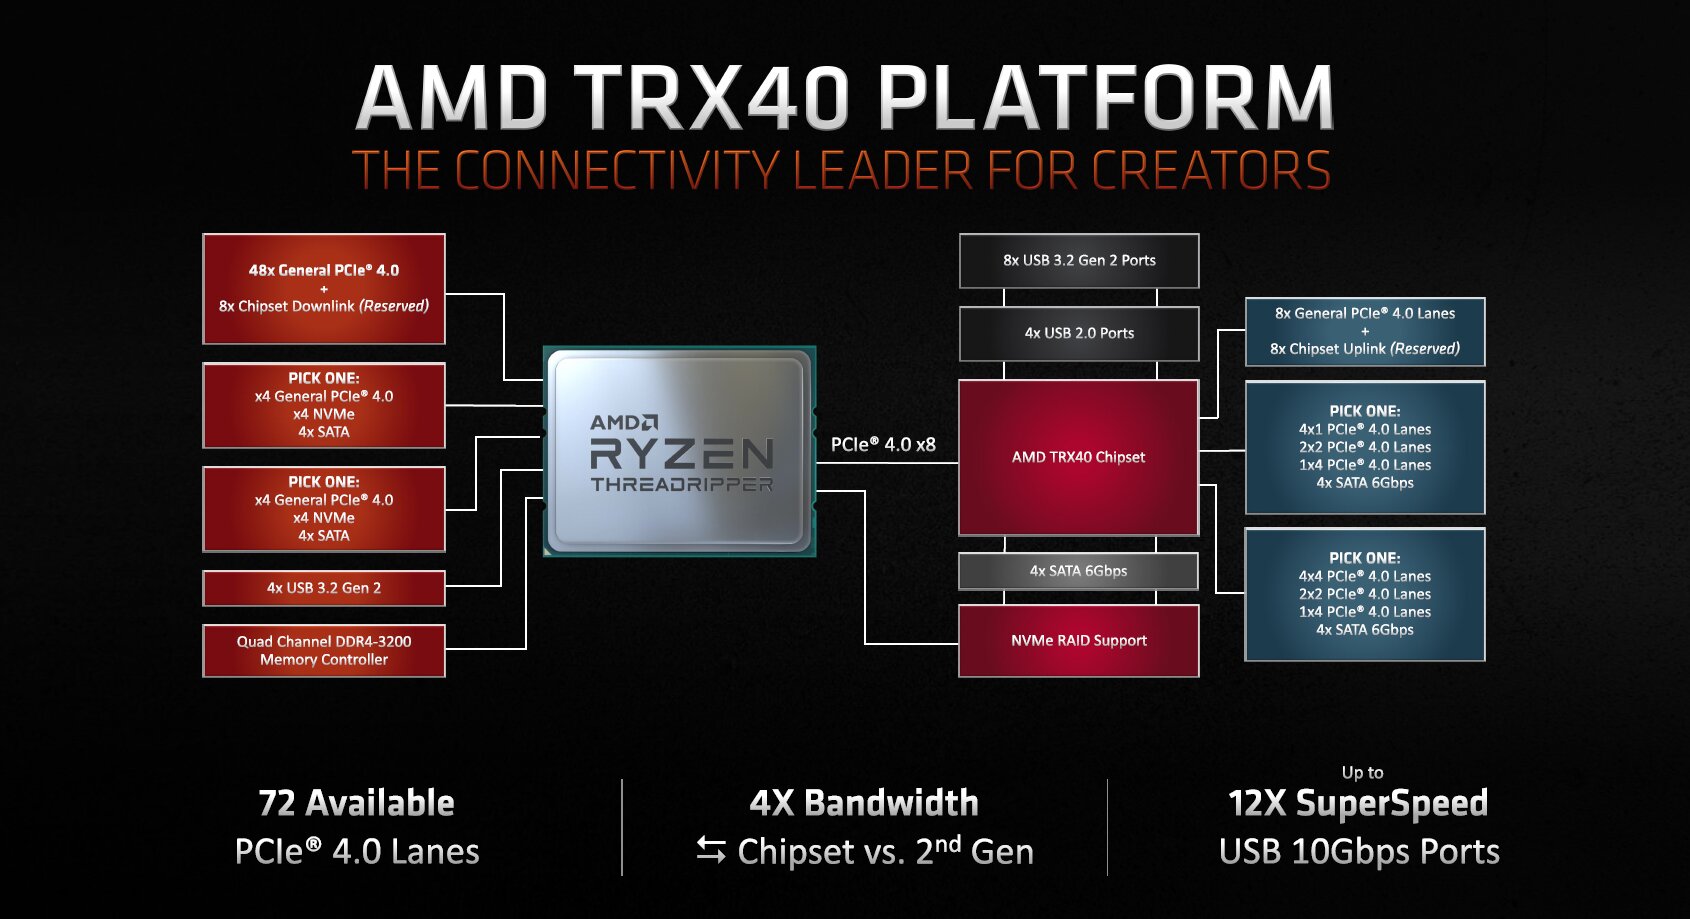 Platform diagram for AMD TRX40